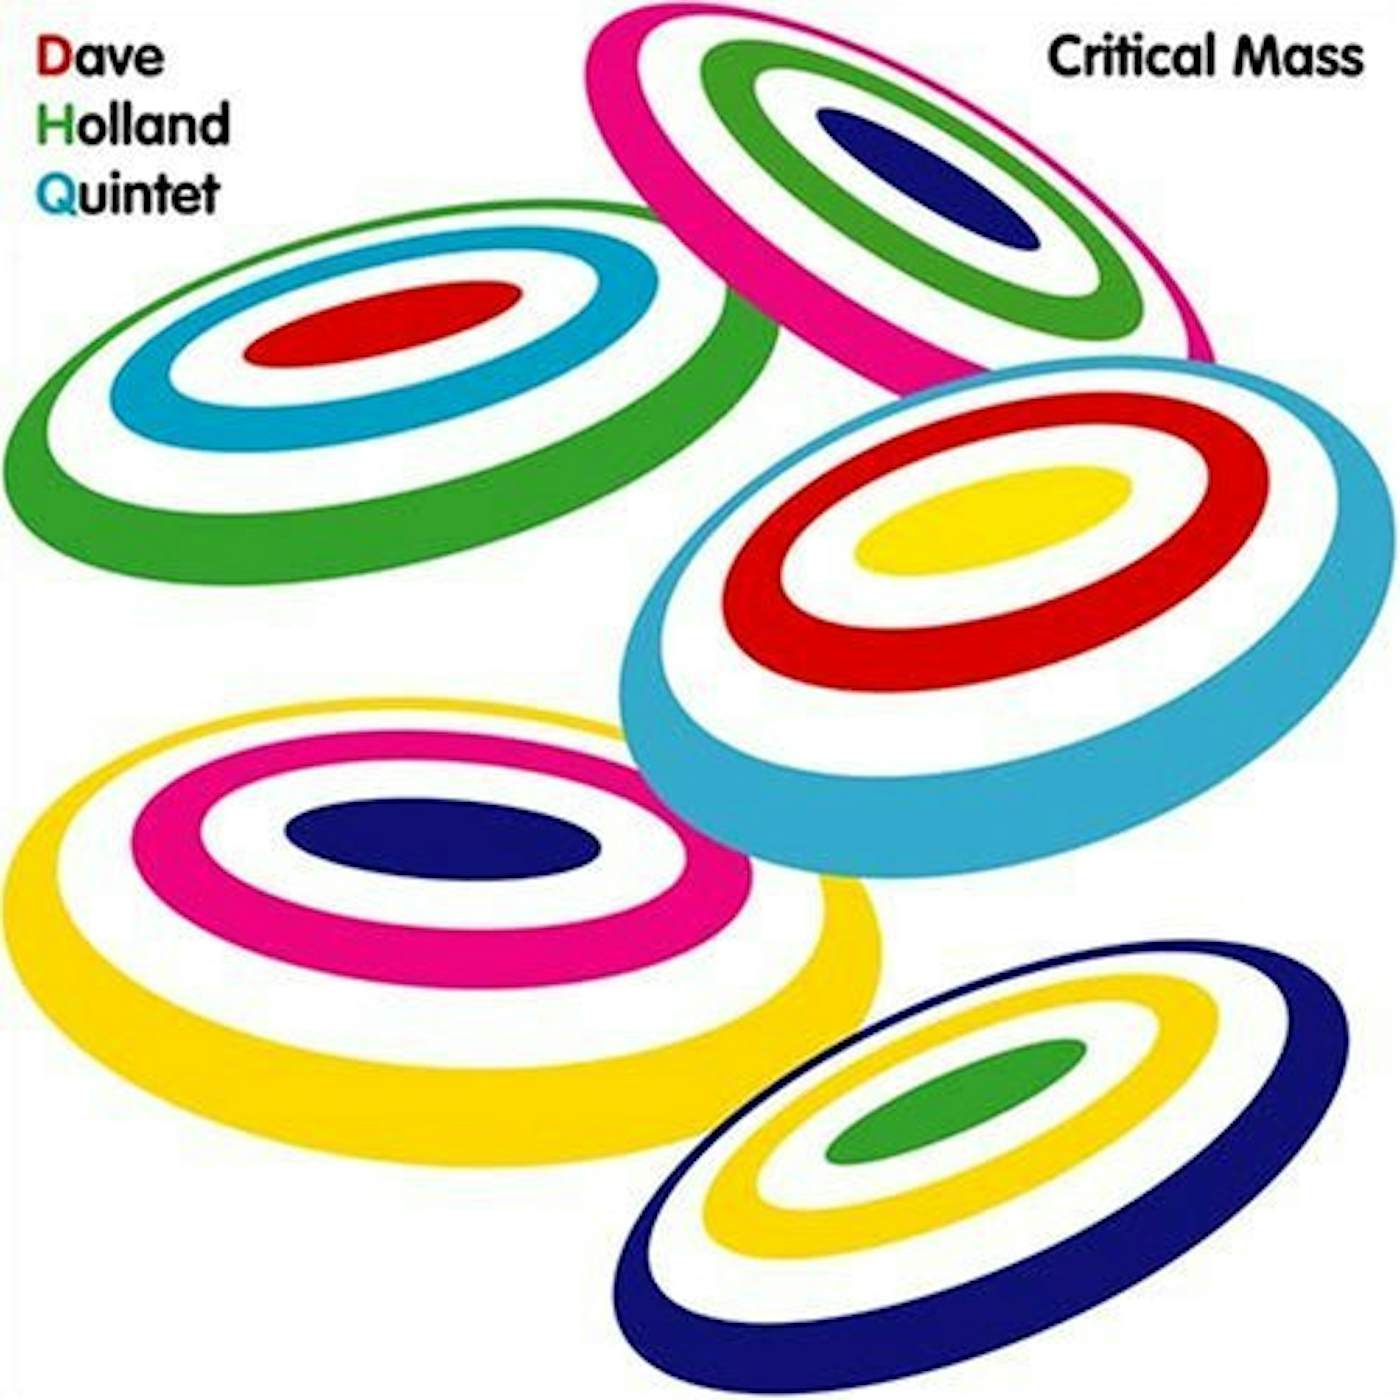 Dave Holland CRITICAL MASS CD